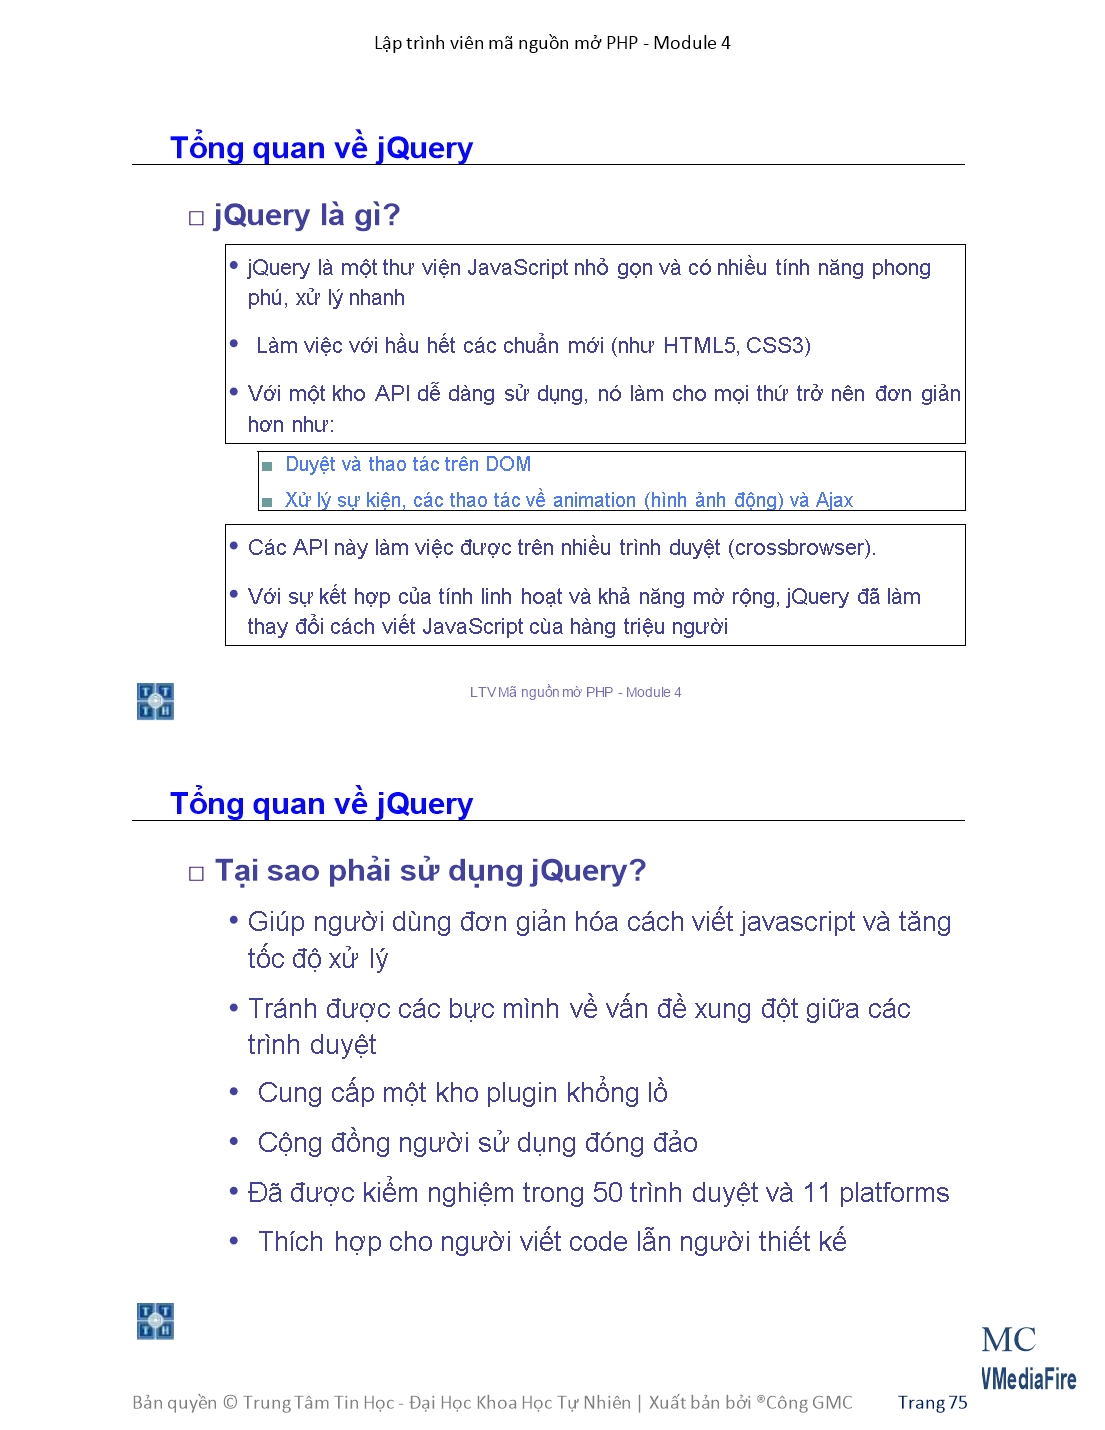 Giáo trình Module 4: Lập trình viên mã nguồn mở PHP - Bài 7: JQuery trang 3